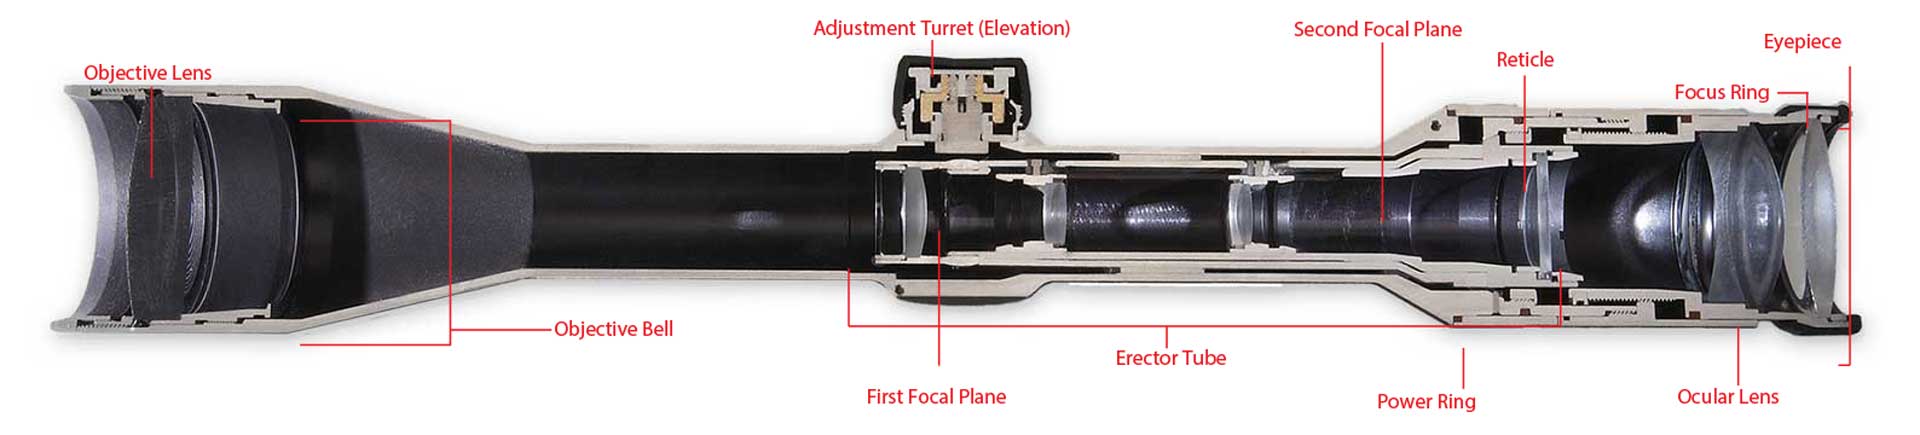 riflescope cutaway inside view mechanical optics glass aluminum